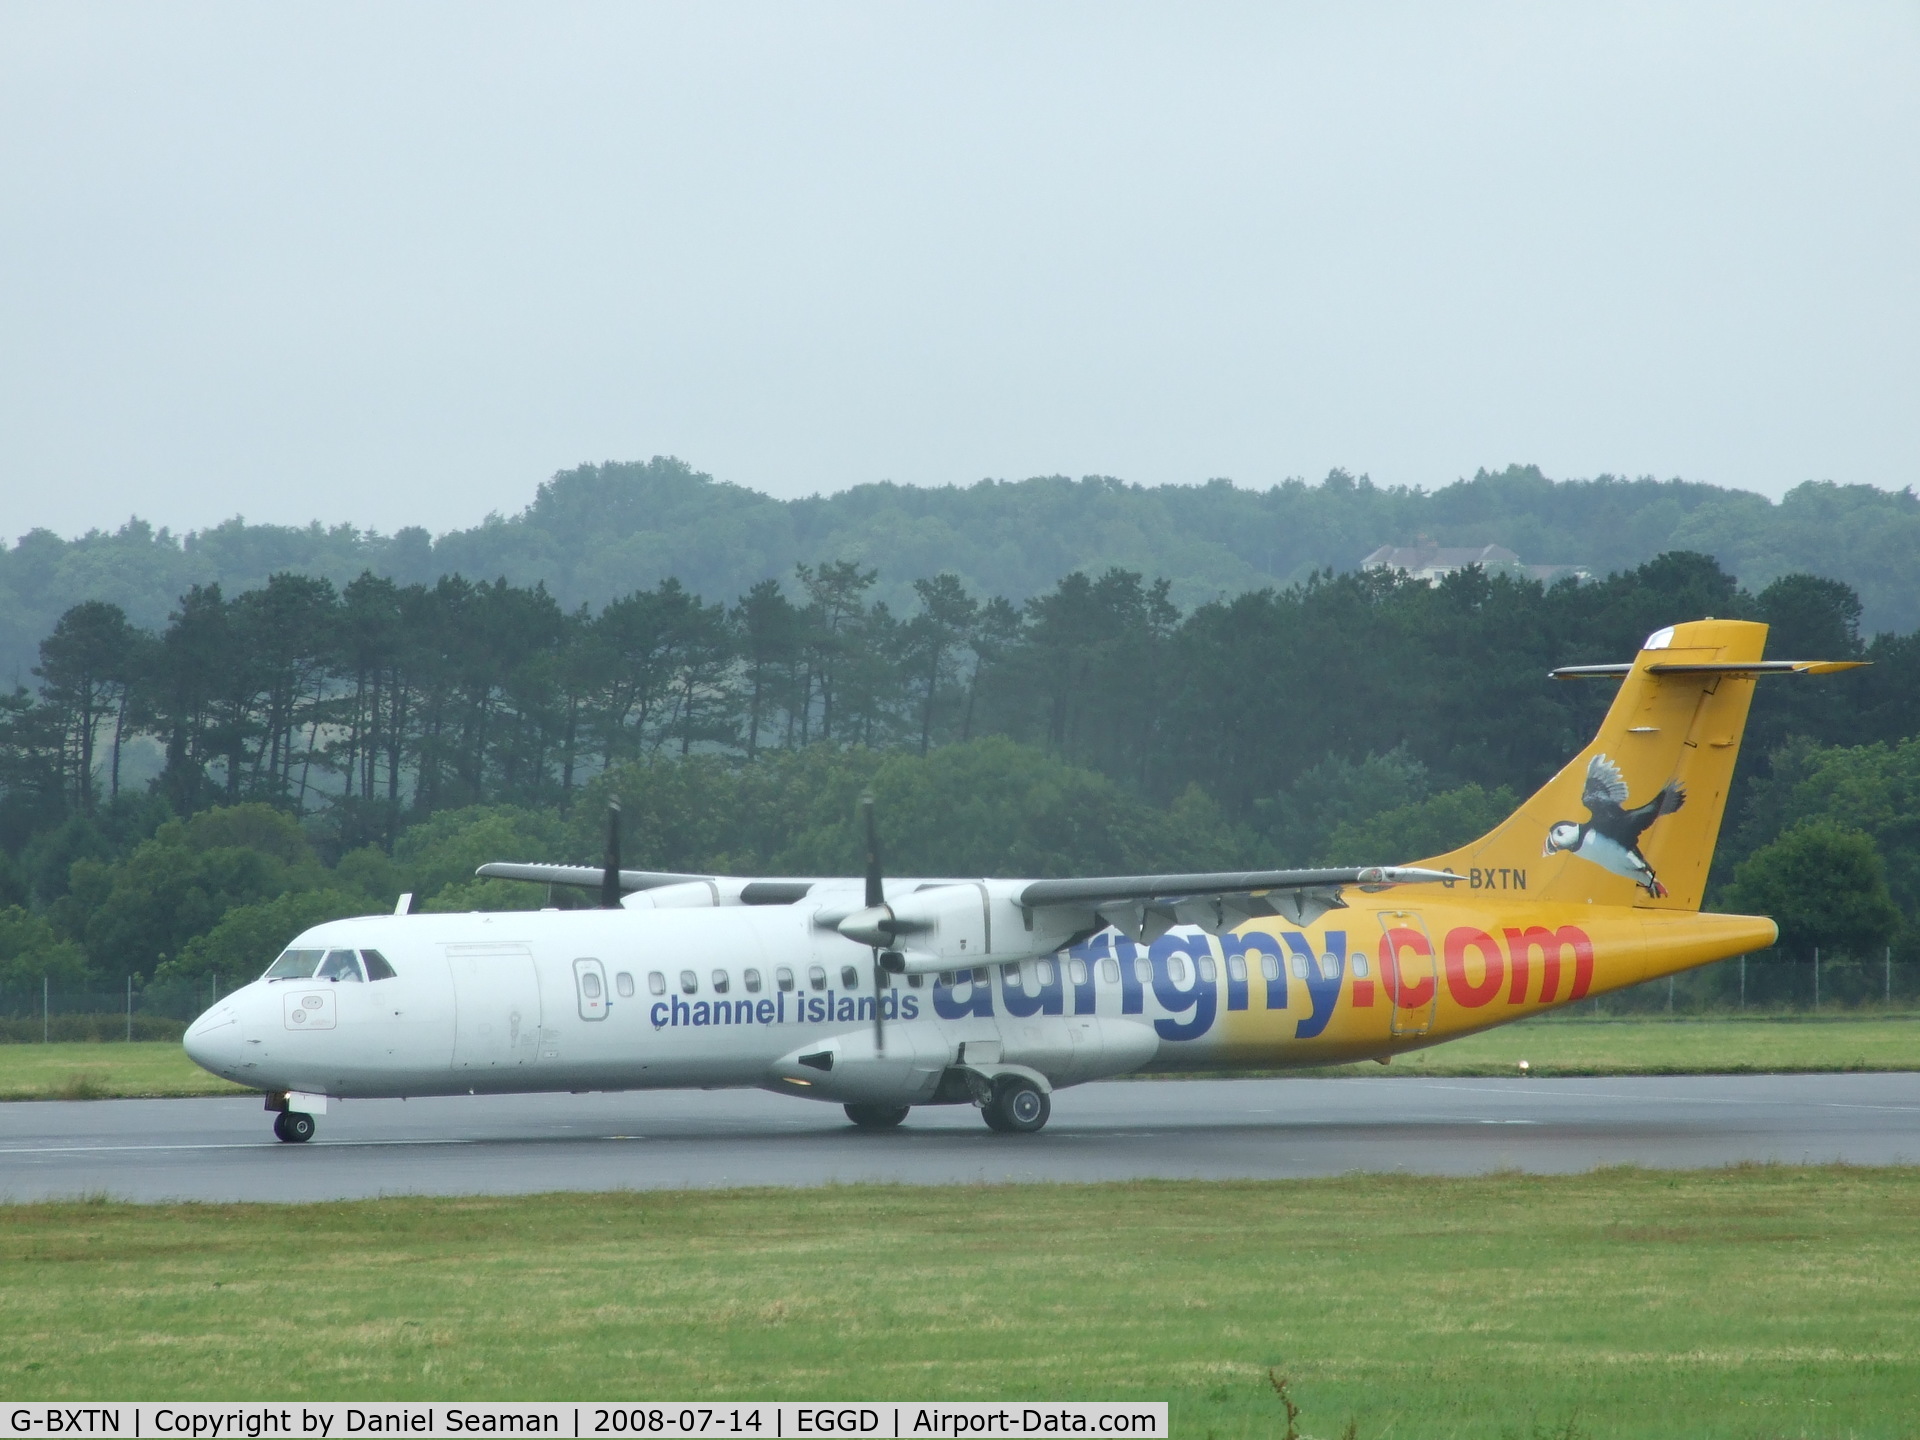 G-BXTN, 1996 ATR 72-202 C/N 483, slowing runway 27